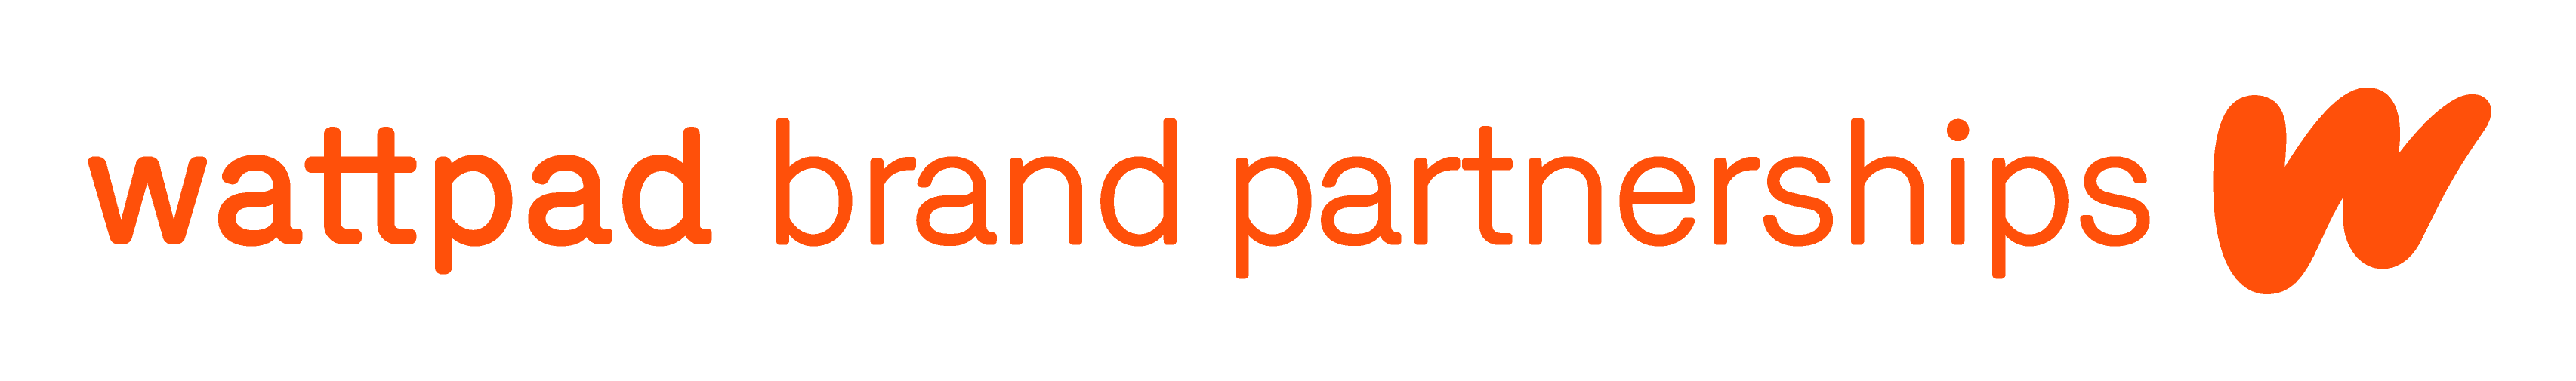 Wattpad_BrandPartnerships_Horizontal_Orange_RGB